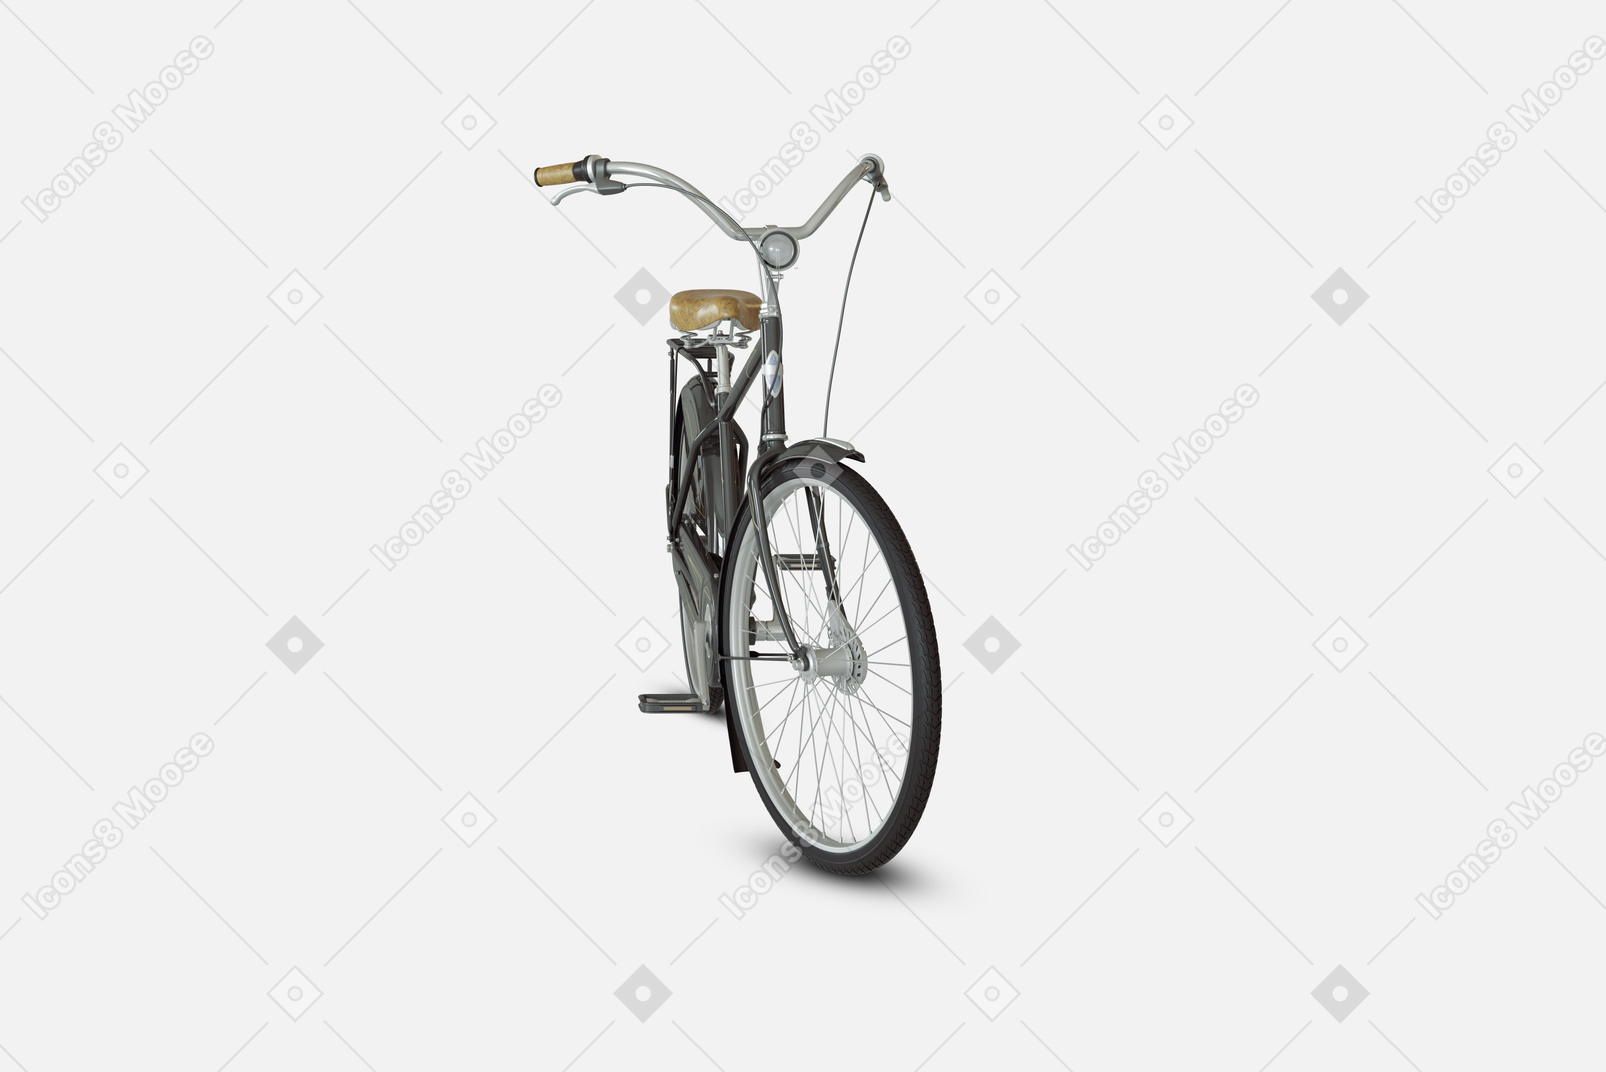 Bicicleta de cidade preta com freios dianteiros e traseiros e um quadro especial